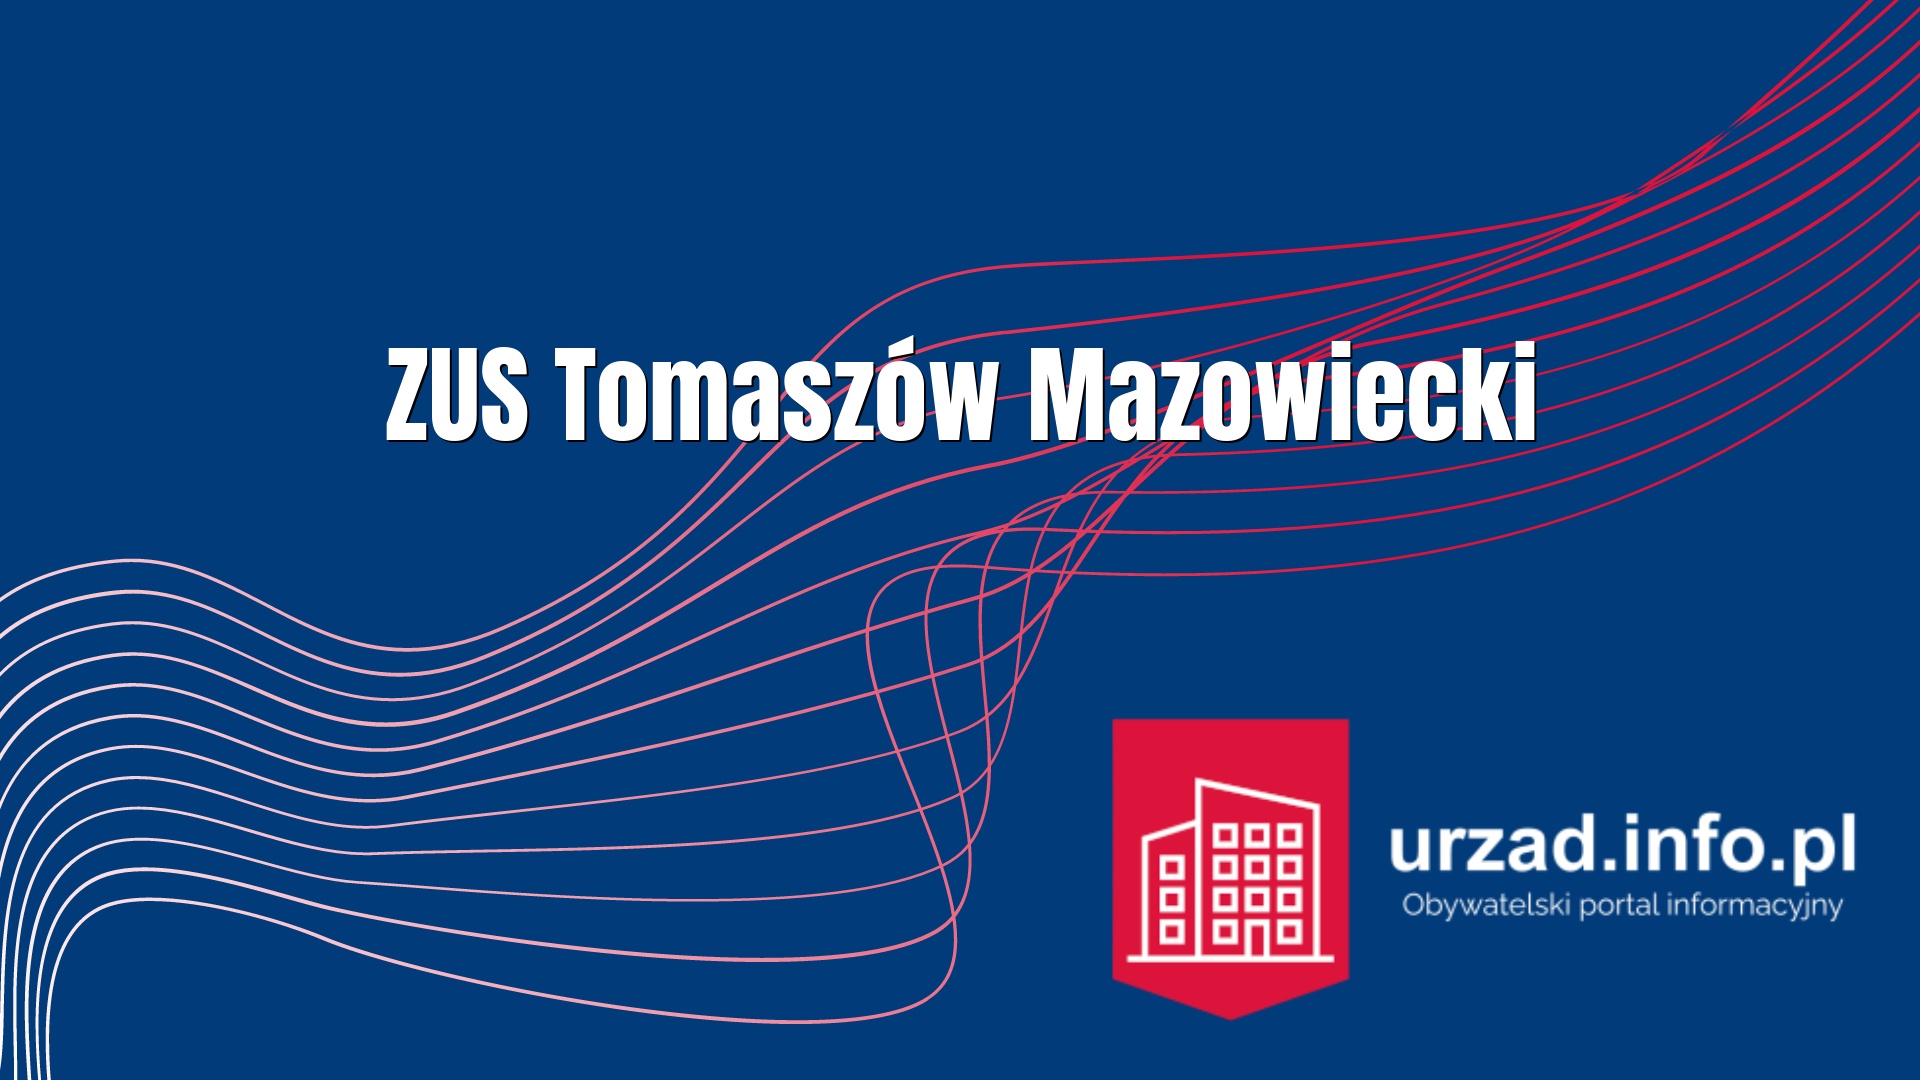 ZUS Tomaszów Mazowiecki -  Zakład Ubezpieczeń Społecznych Oddział w Tomaszowie Mazowieckim